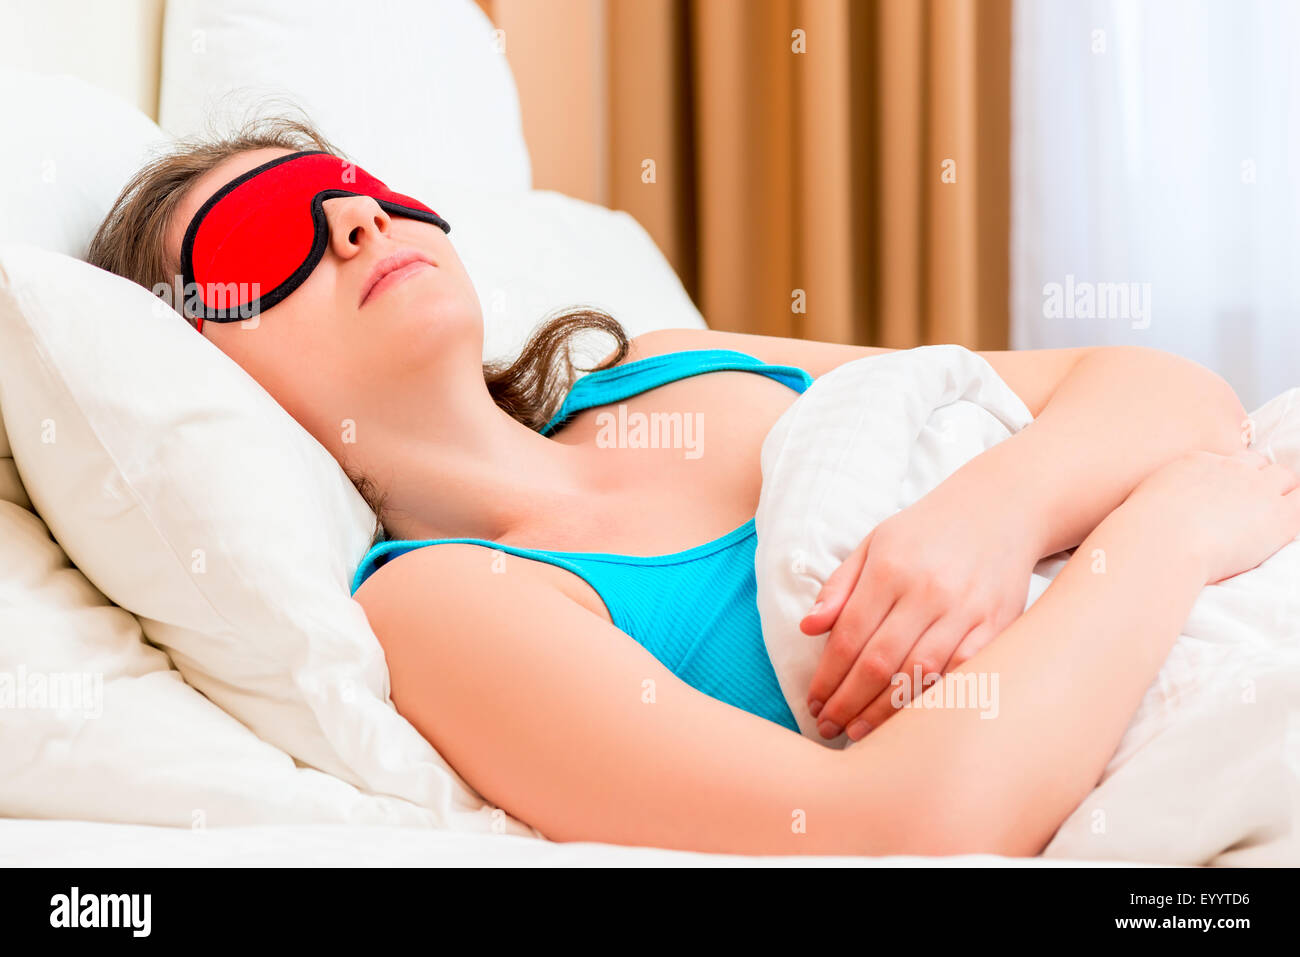 Ritratto di una donna addormentata con una maschera per gli occhi Foto Stock